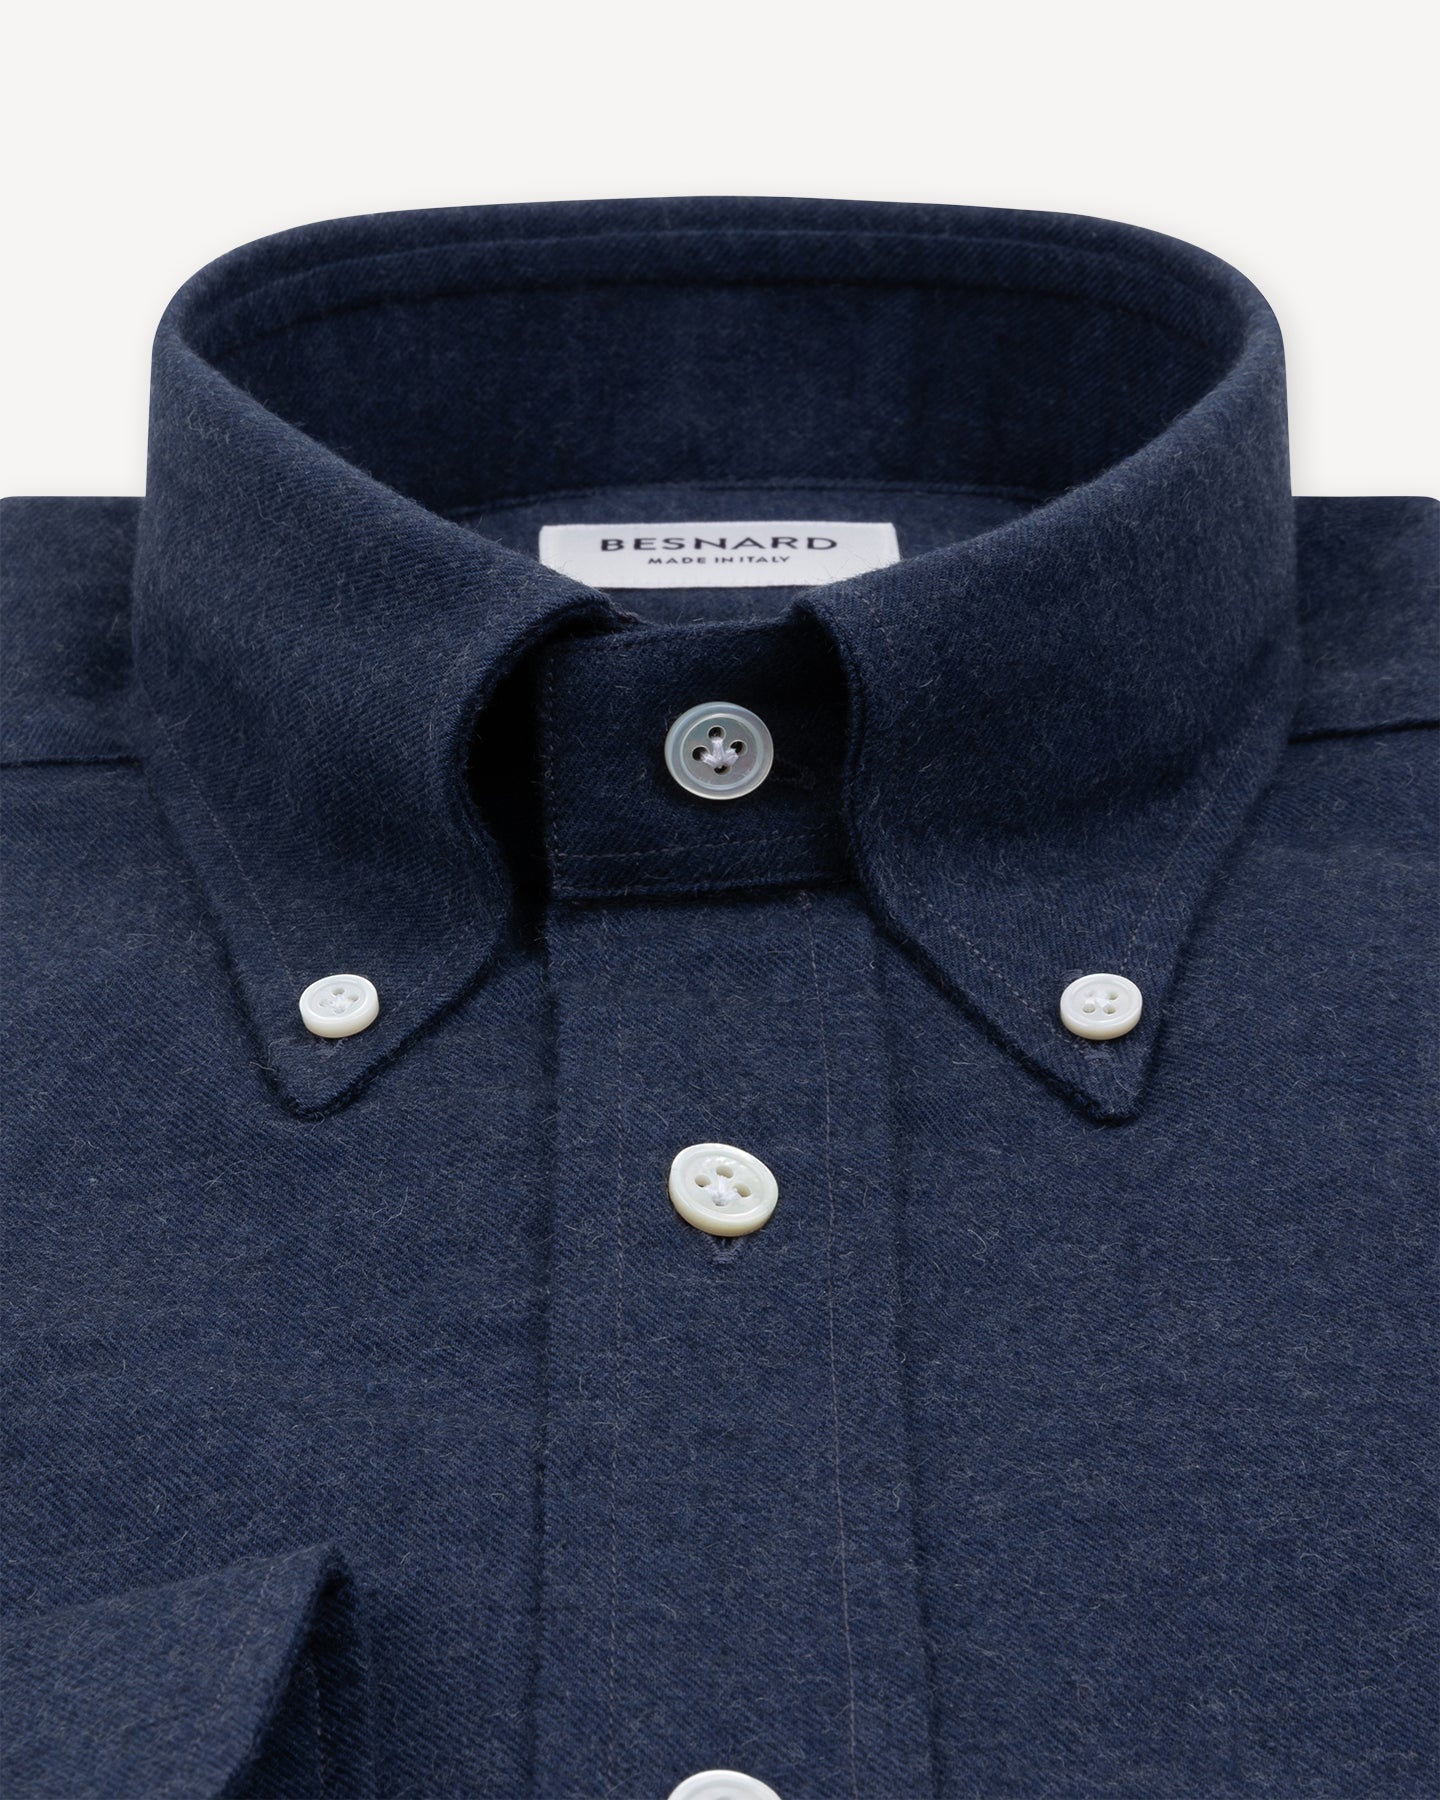 Dark Blue Cotton Cashmere Flannel Shirt with Button Down collar